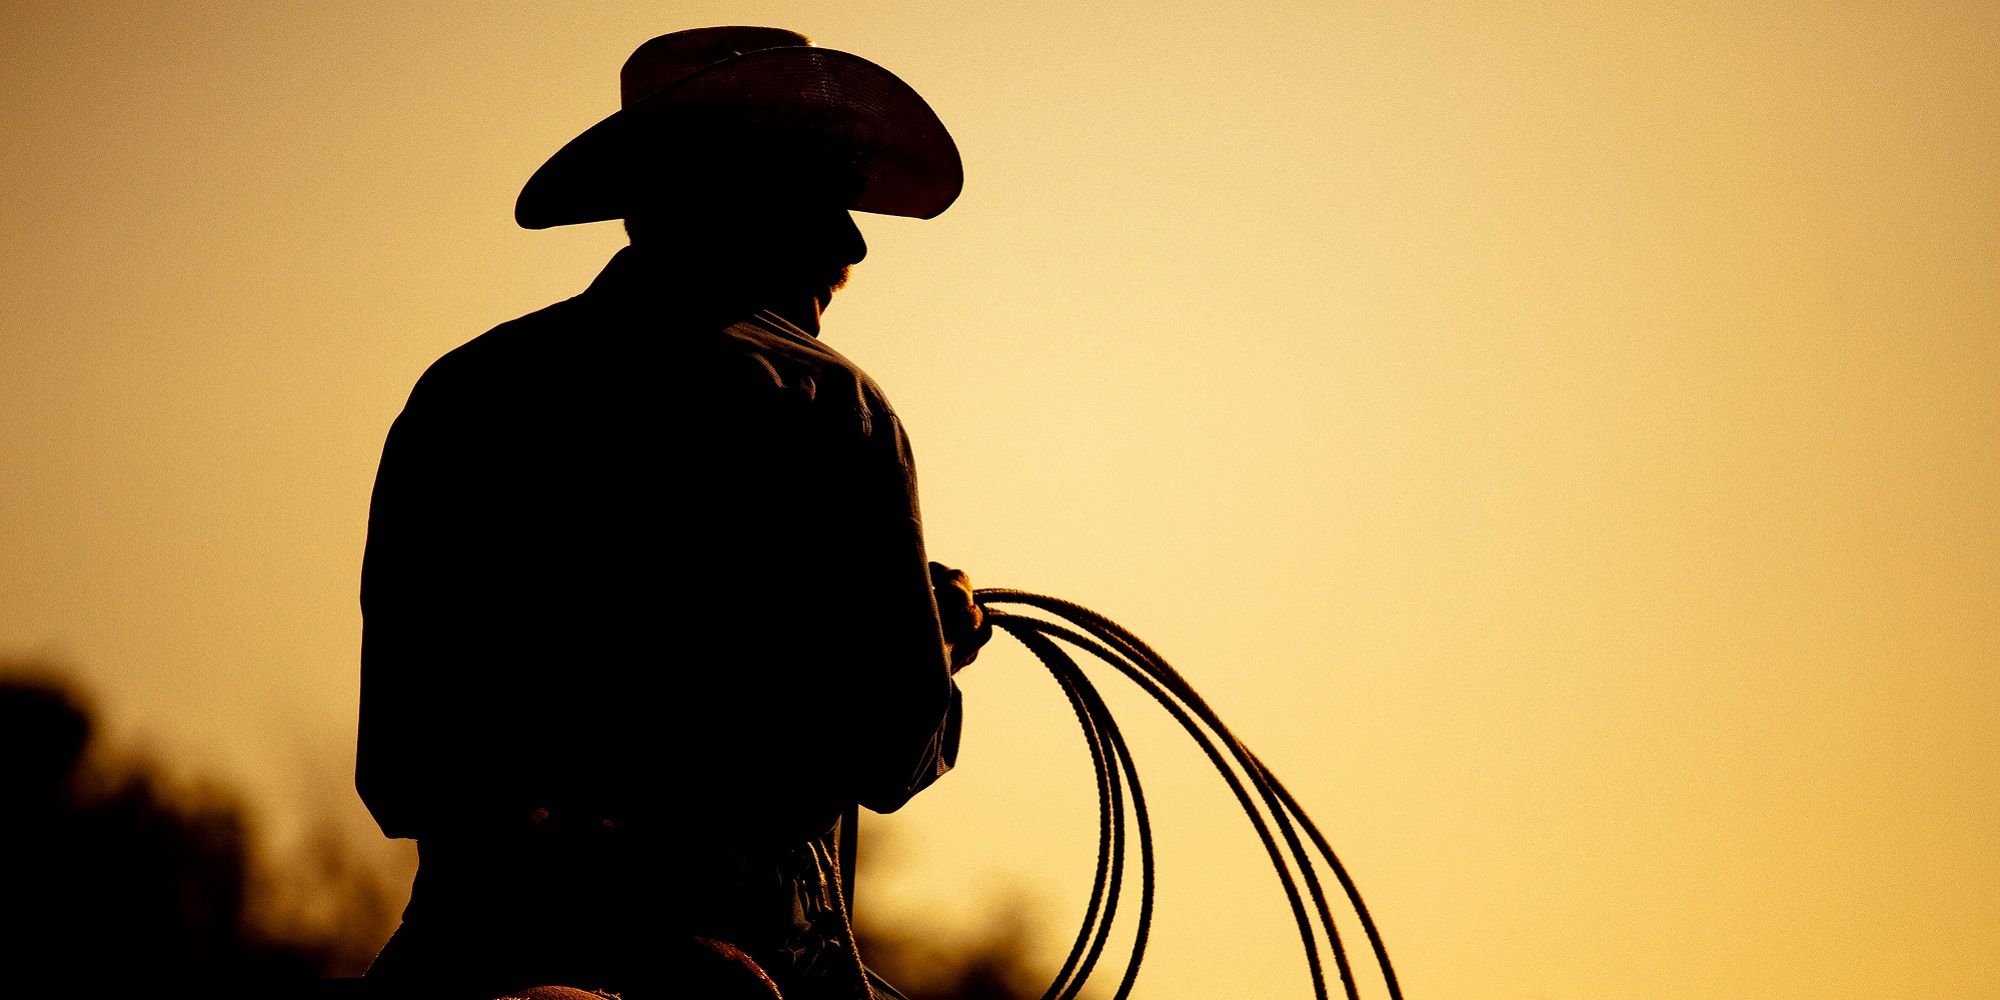 Texas Roadtrip Cowboy